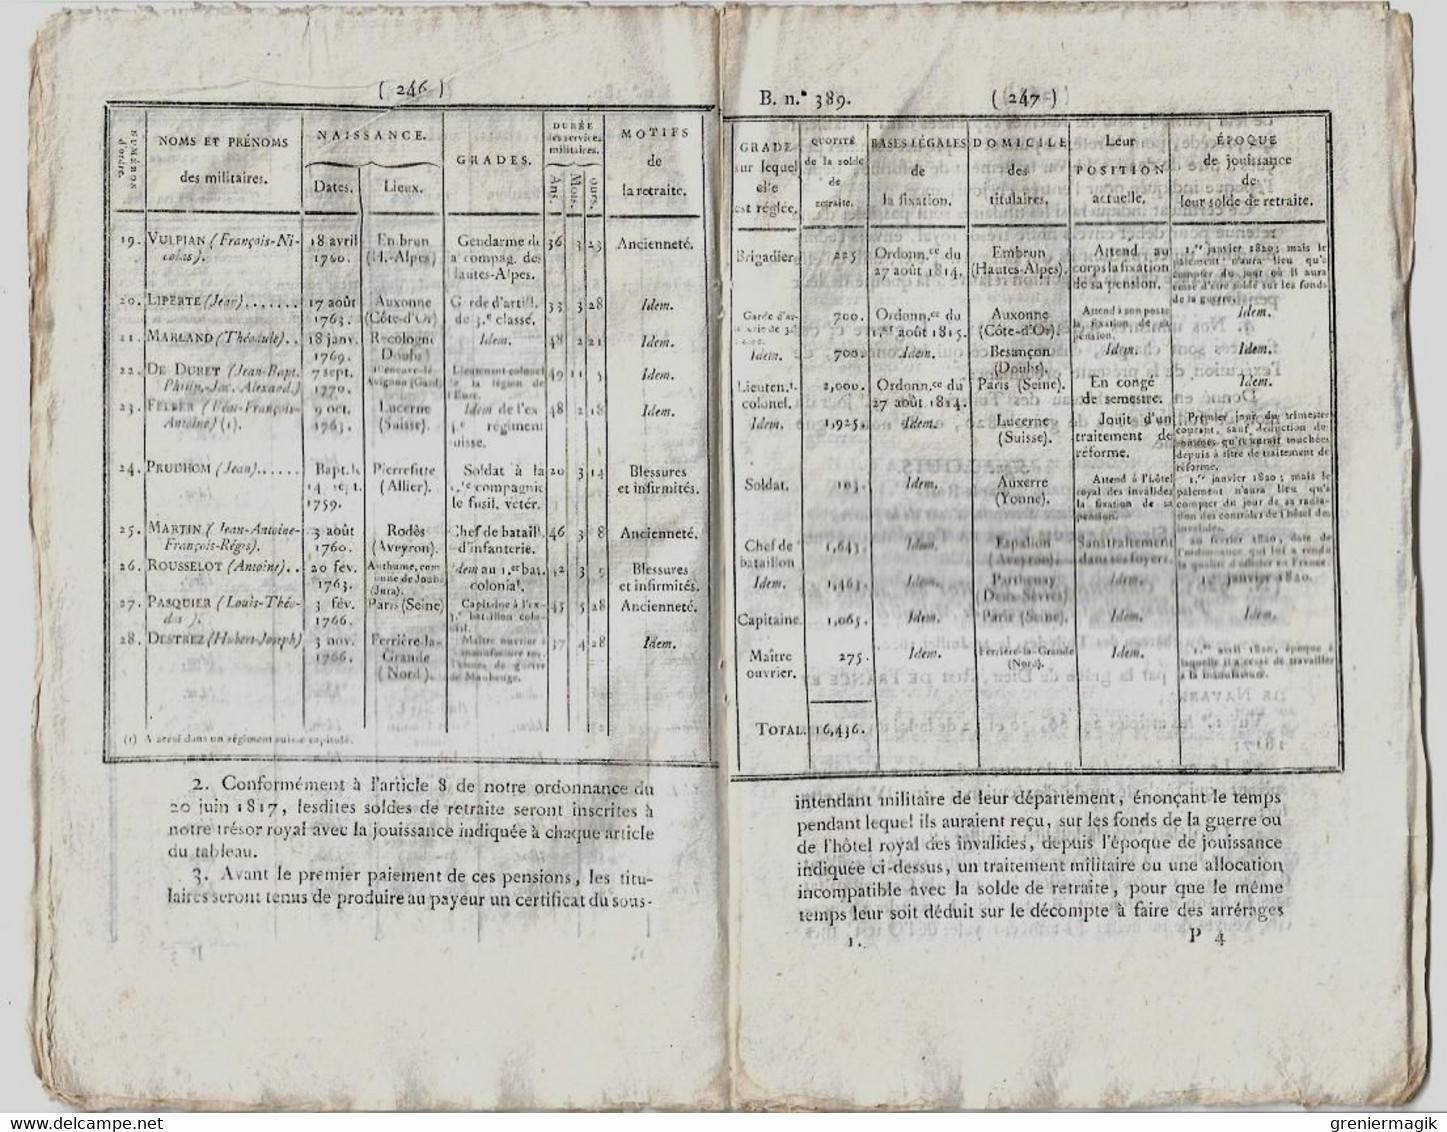 Bulletin Des Lois N°389 1820 Pensions Veuves Militaires (Carpentier Bastia-Léonard Jouhaud Présumé Mort... Bérézina) - Decreti & Leggi